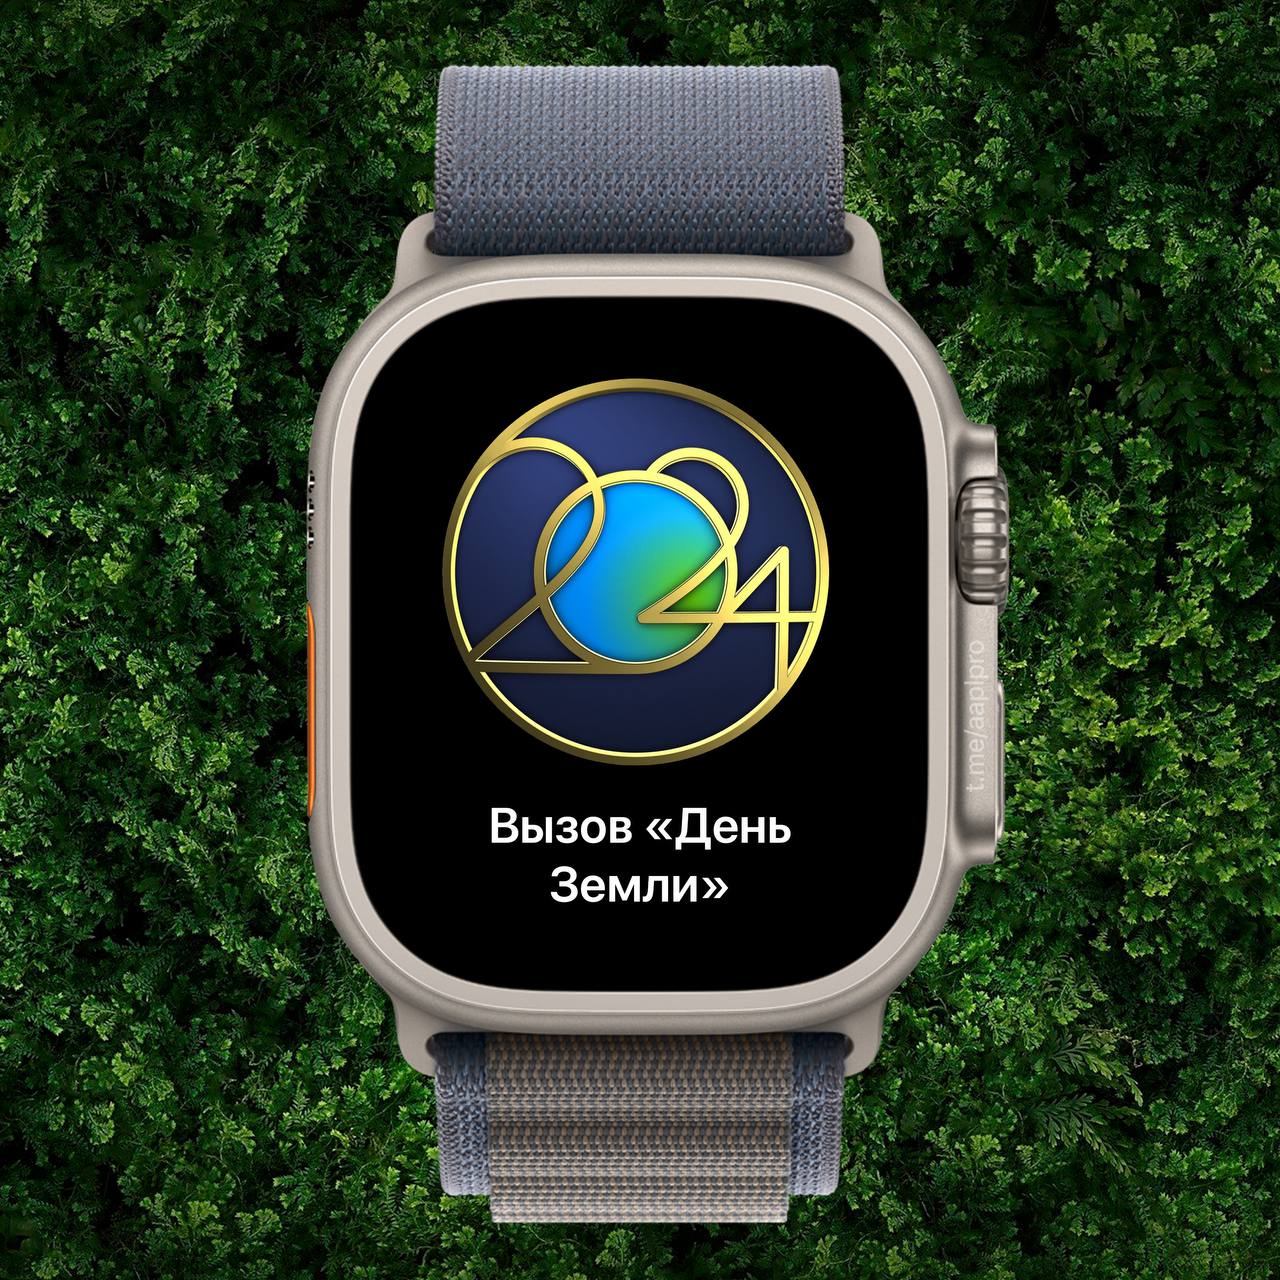 Сегодня владельцы часов от Apple могут заработать награду «День Земли» и анимированные стикеры iMessage, выполнив любую тренировку длительностью 30 минут и более